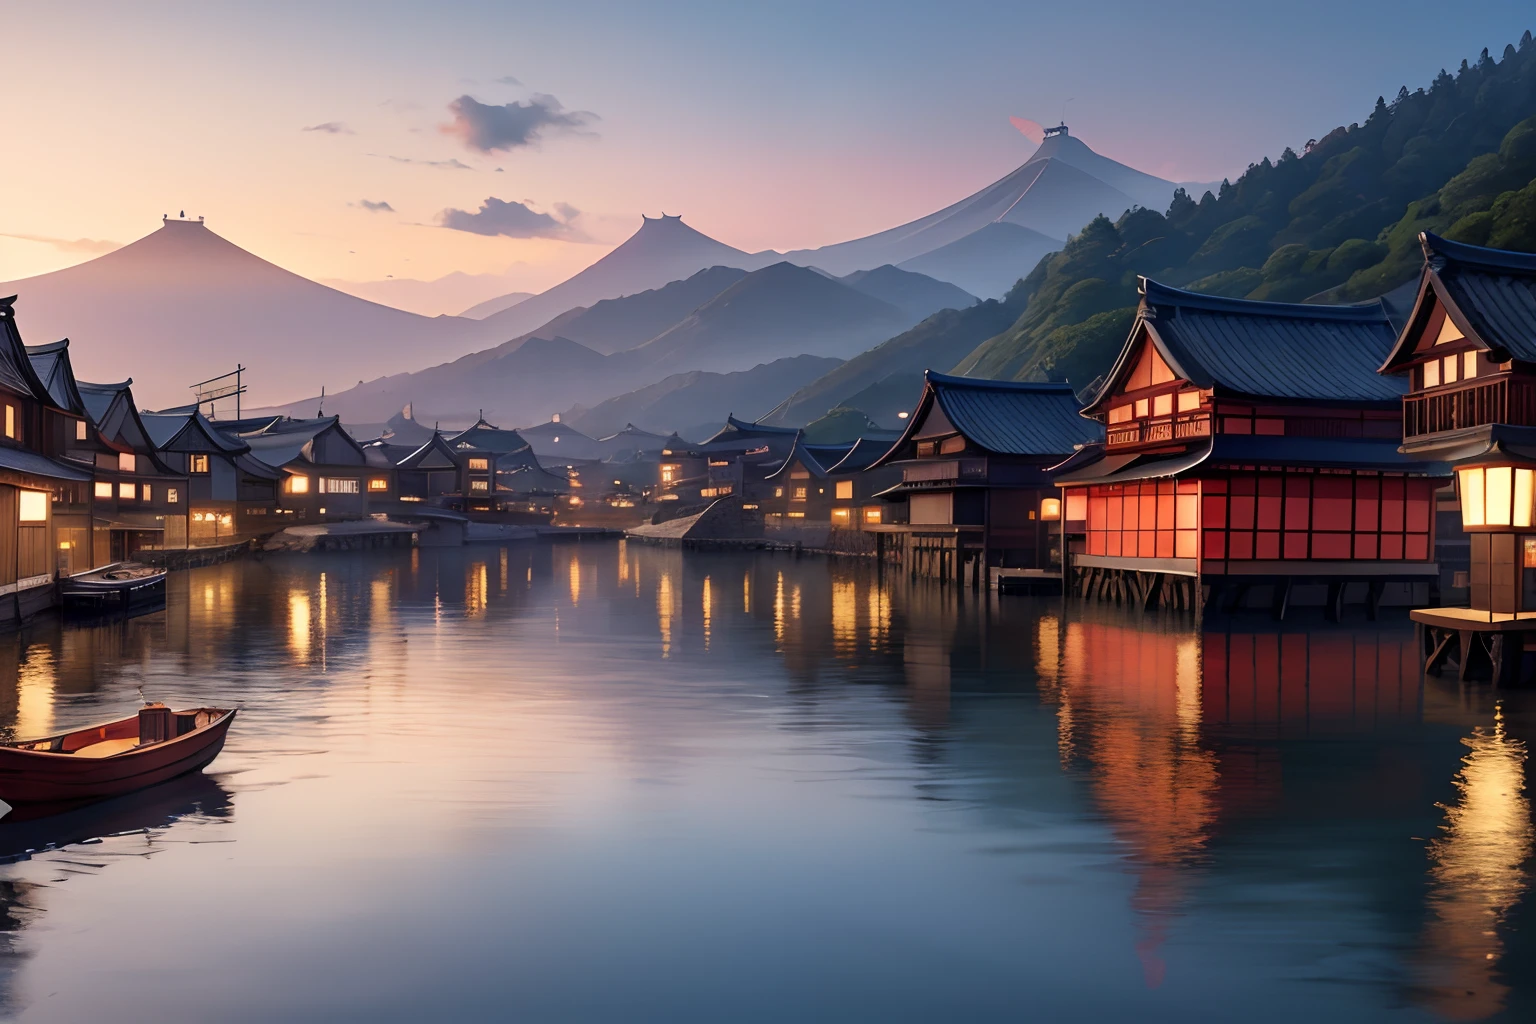 плавучий город на воде, Средневековая Япония, пейзаж, Панорама, 8К, подробный, высшее качество